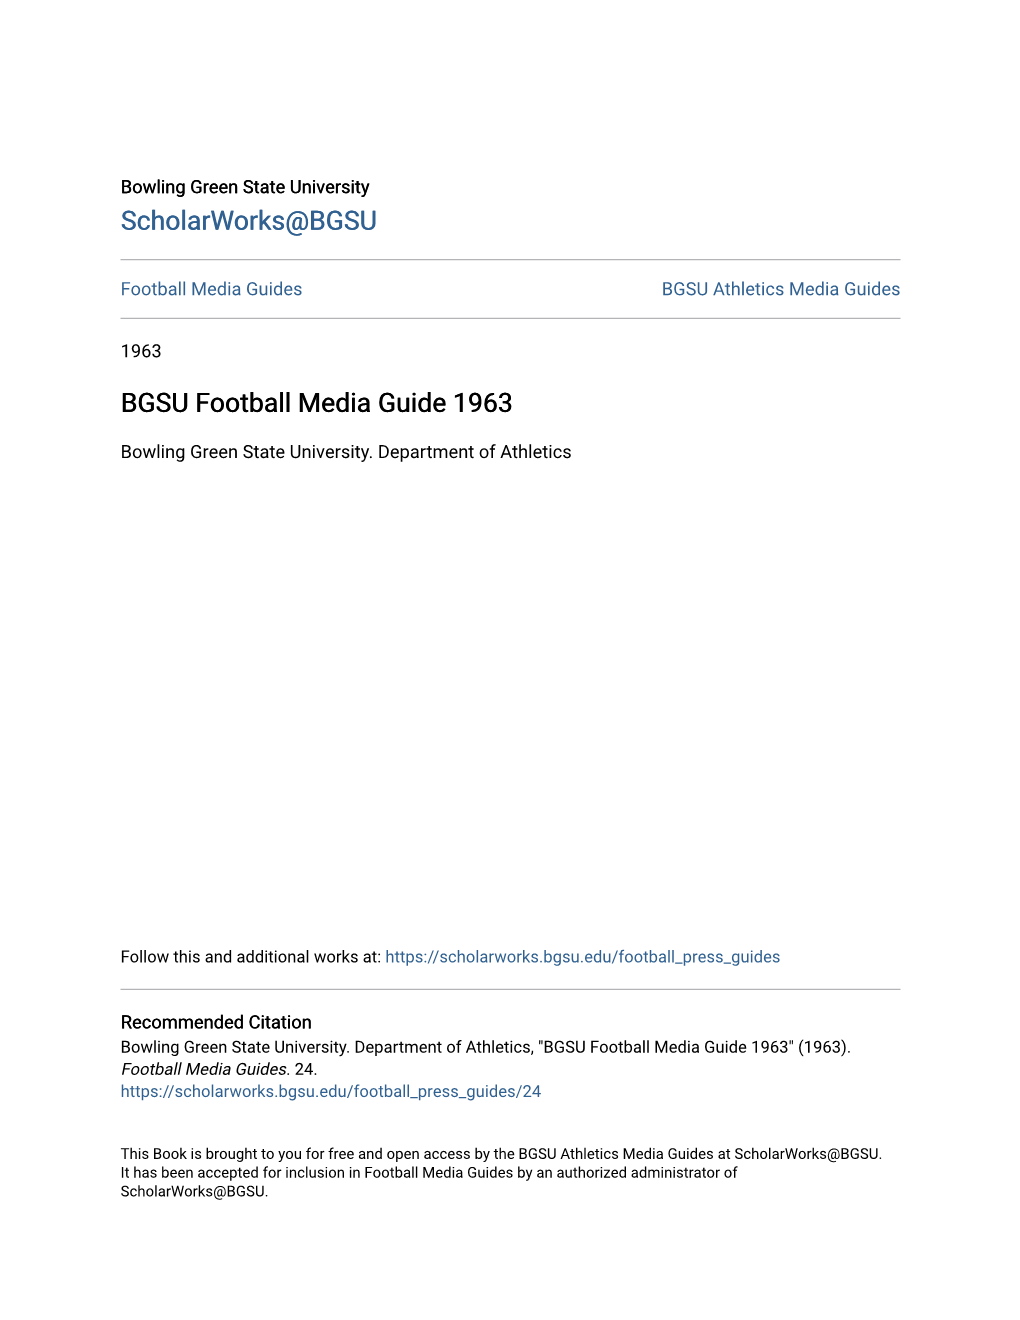 BGSU Football Media Guide 1963